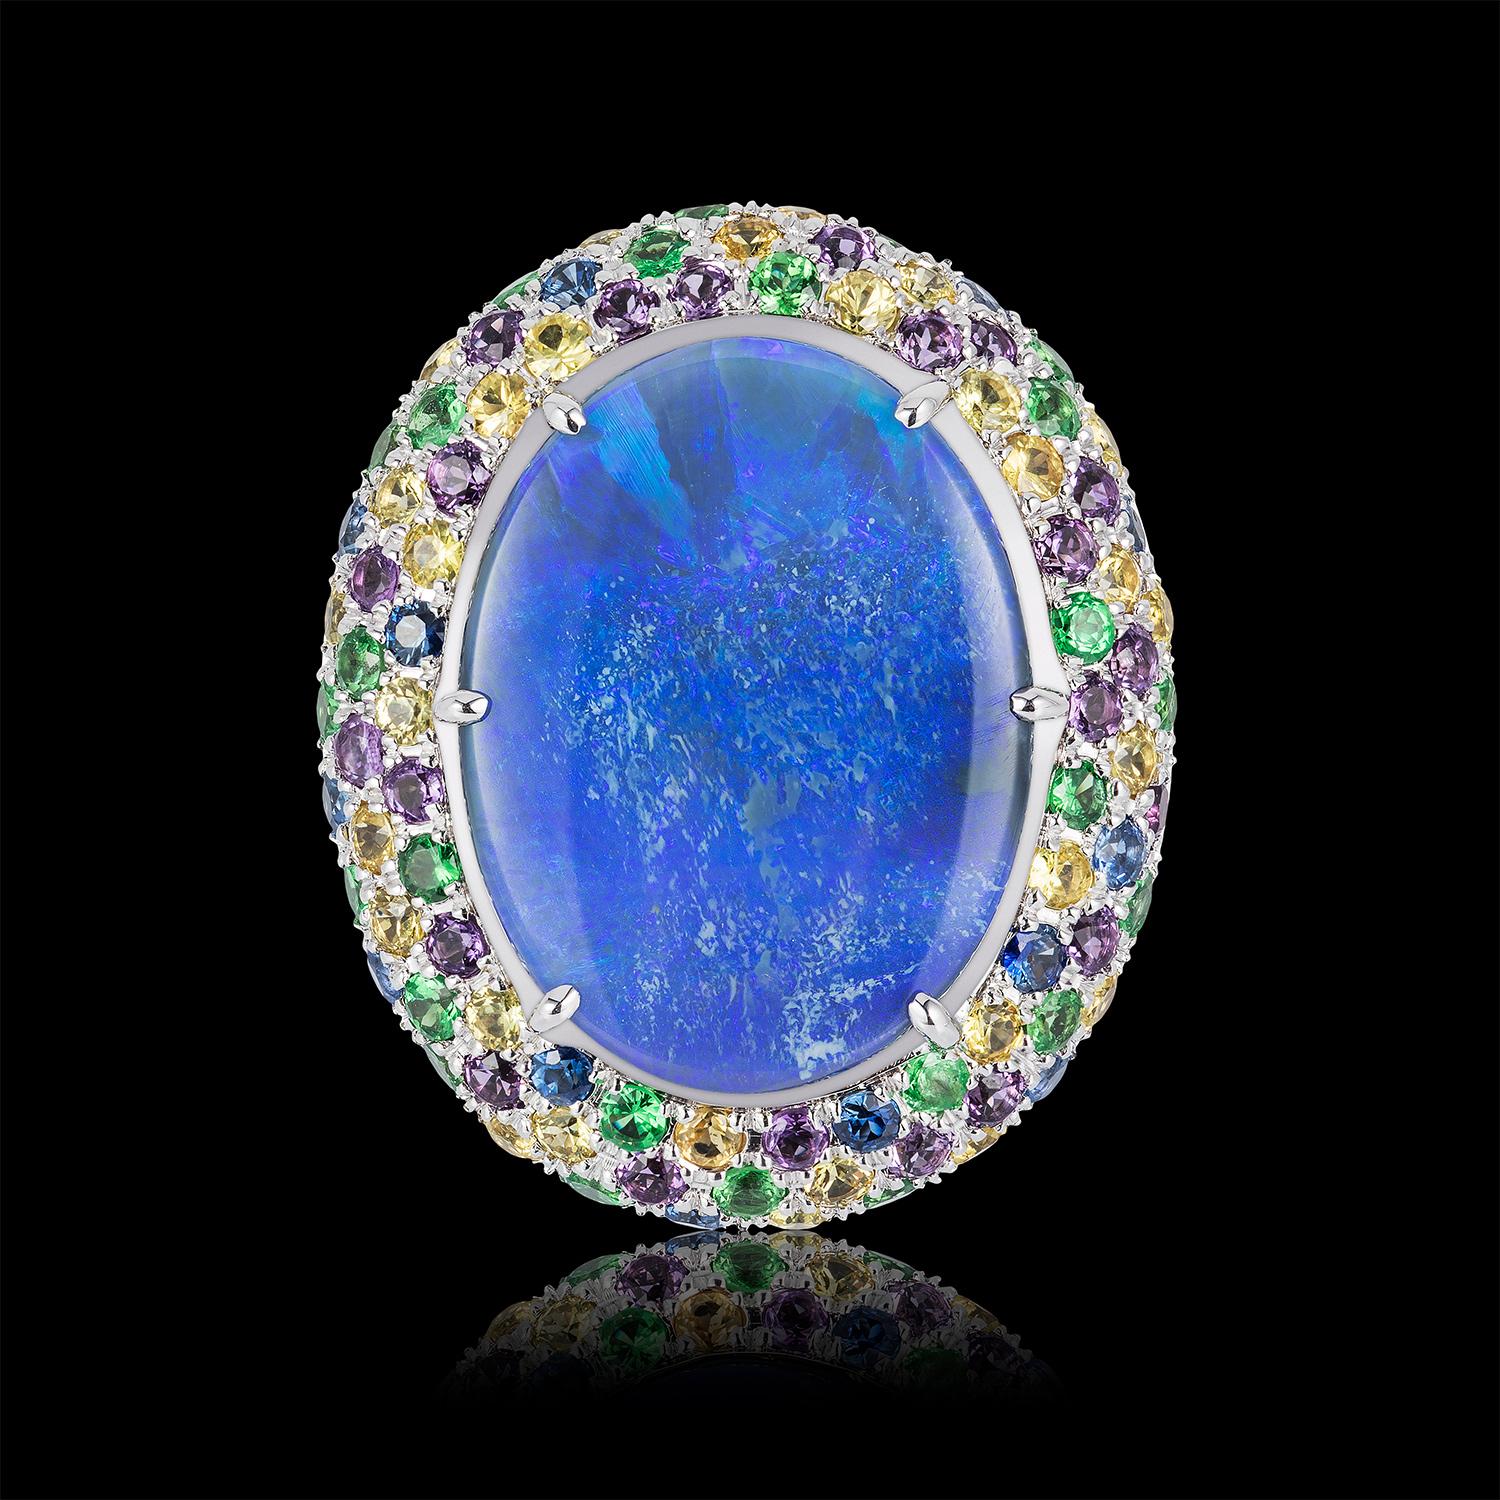 Oval Cut Blue Opal Yellow Blue Sapphire Amethyst Tsavorite Garnet Cocktail Ring 18 Karat